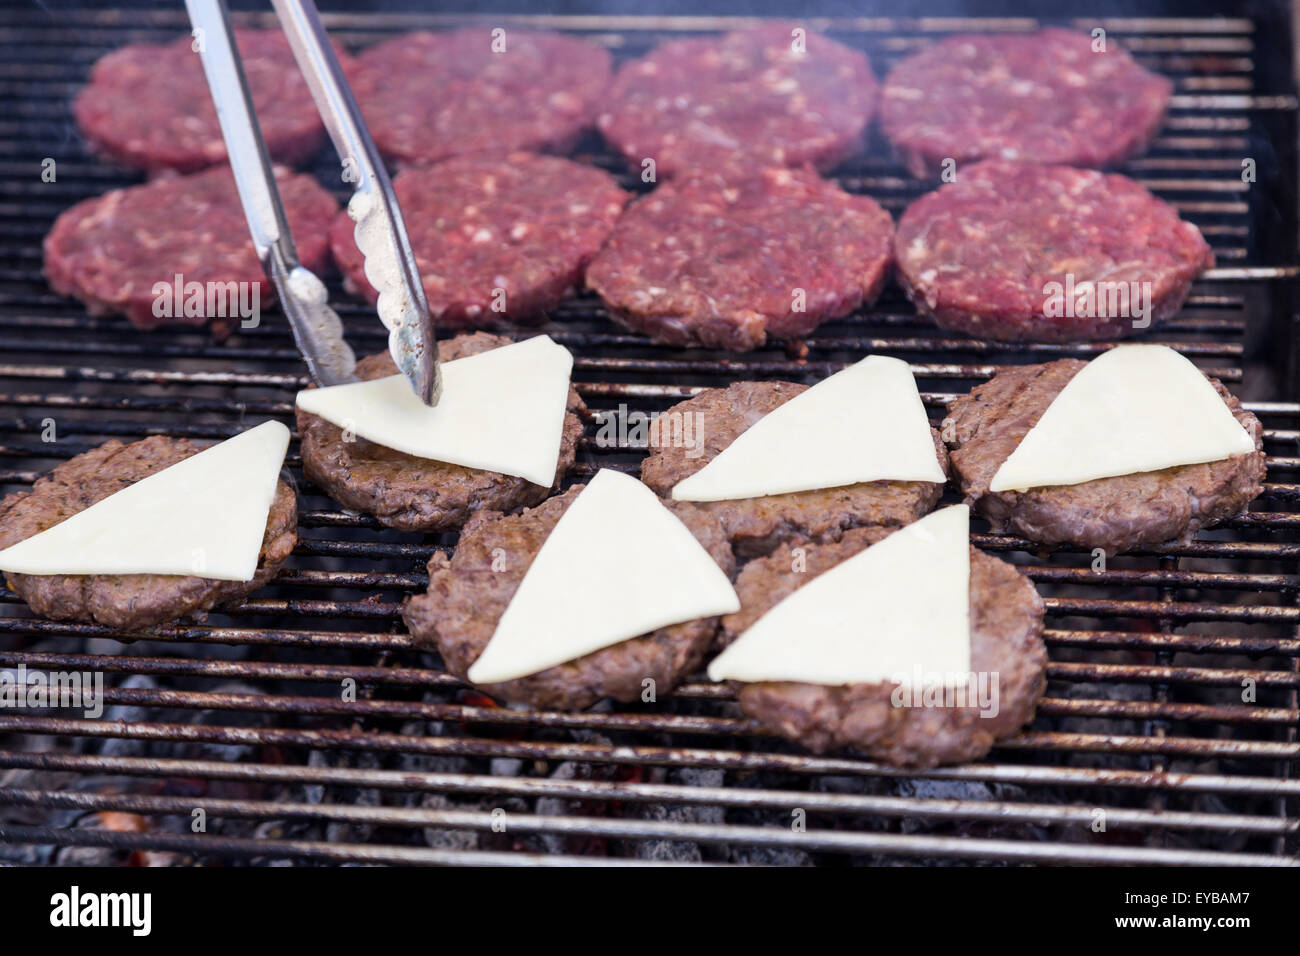 Grill caldo burger cotoletta barbeque sul reticolo di carbone di cui sopra Foto Stock